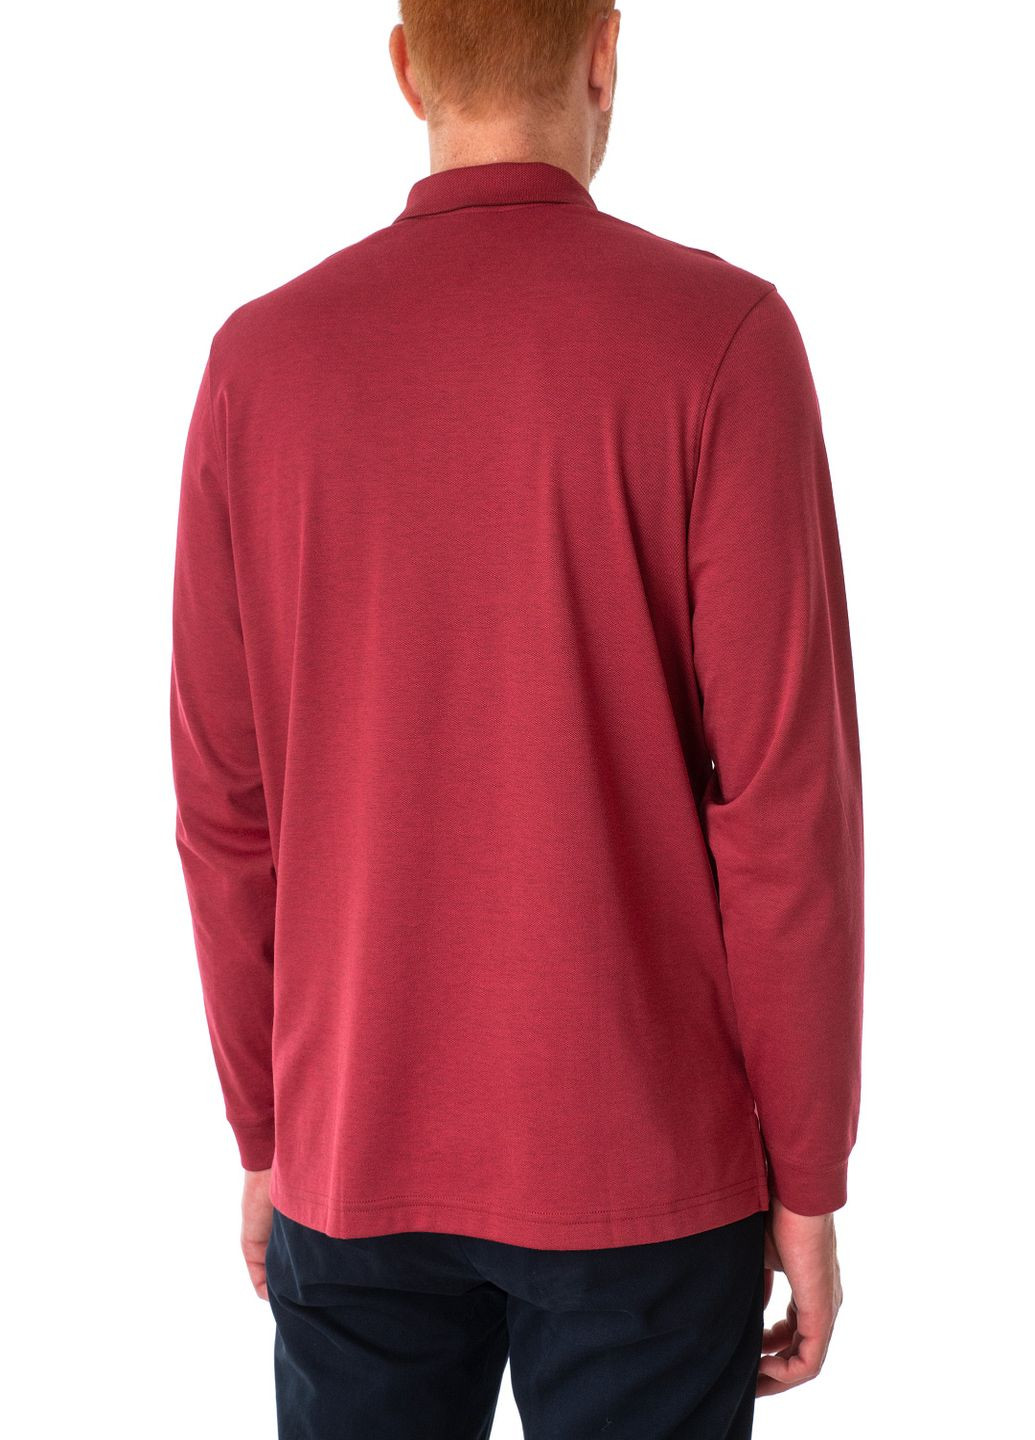 Бордовая футболка-поло для мужчин Ragman меланжевая